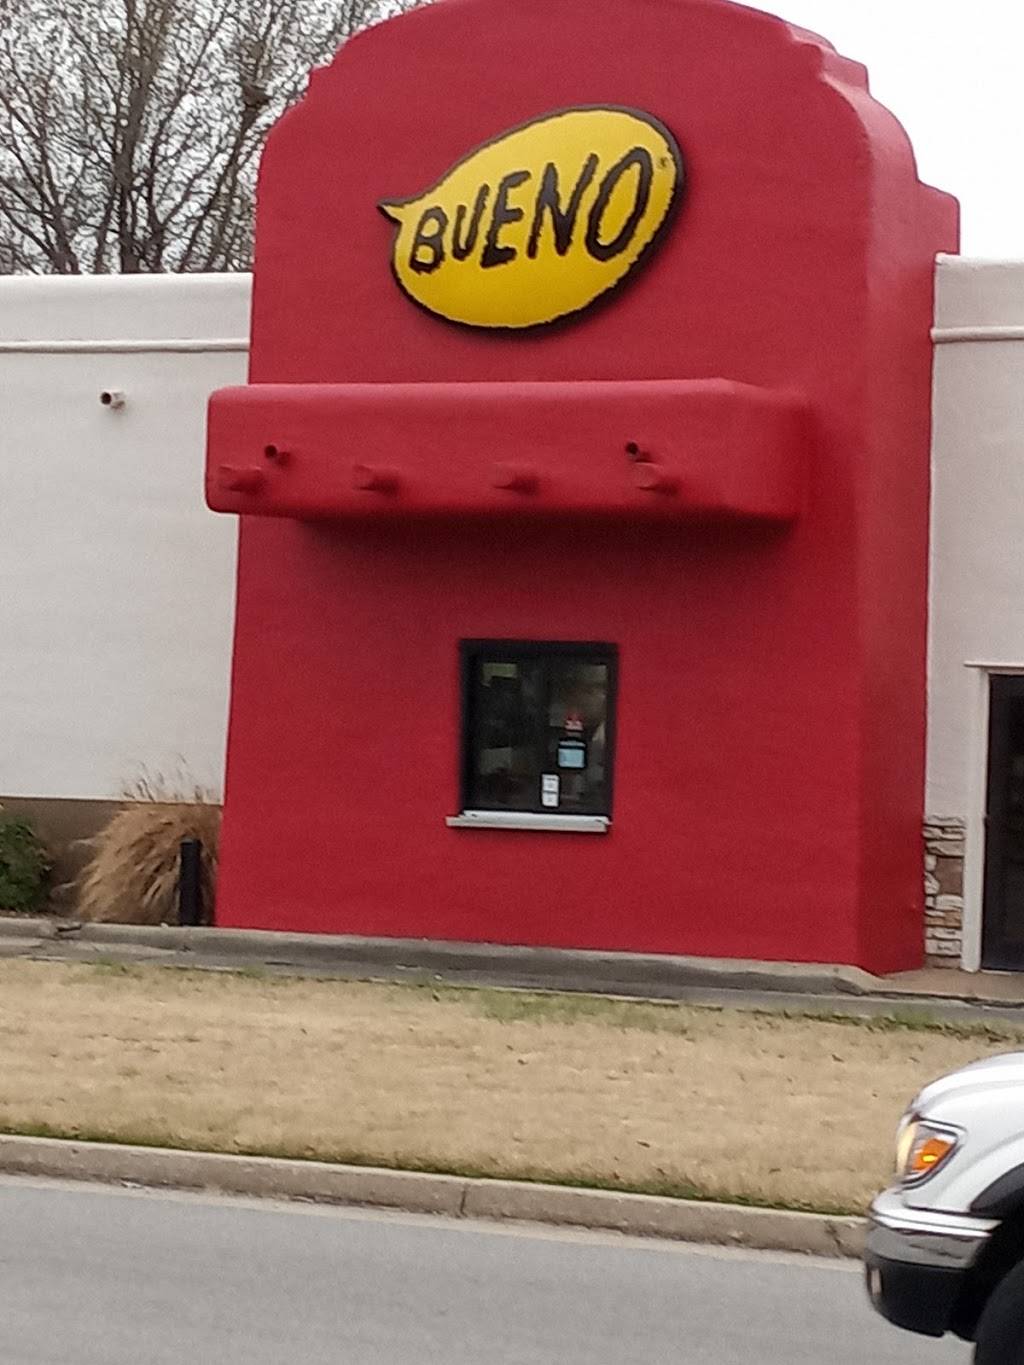 Taco Bueno | 9760 E 31st St, Tulsa, OK 74146, USA | Phone: (918) 622-9512